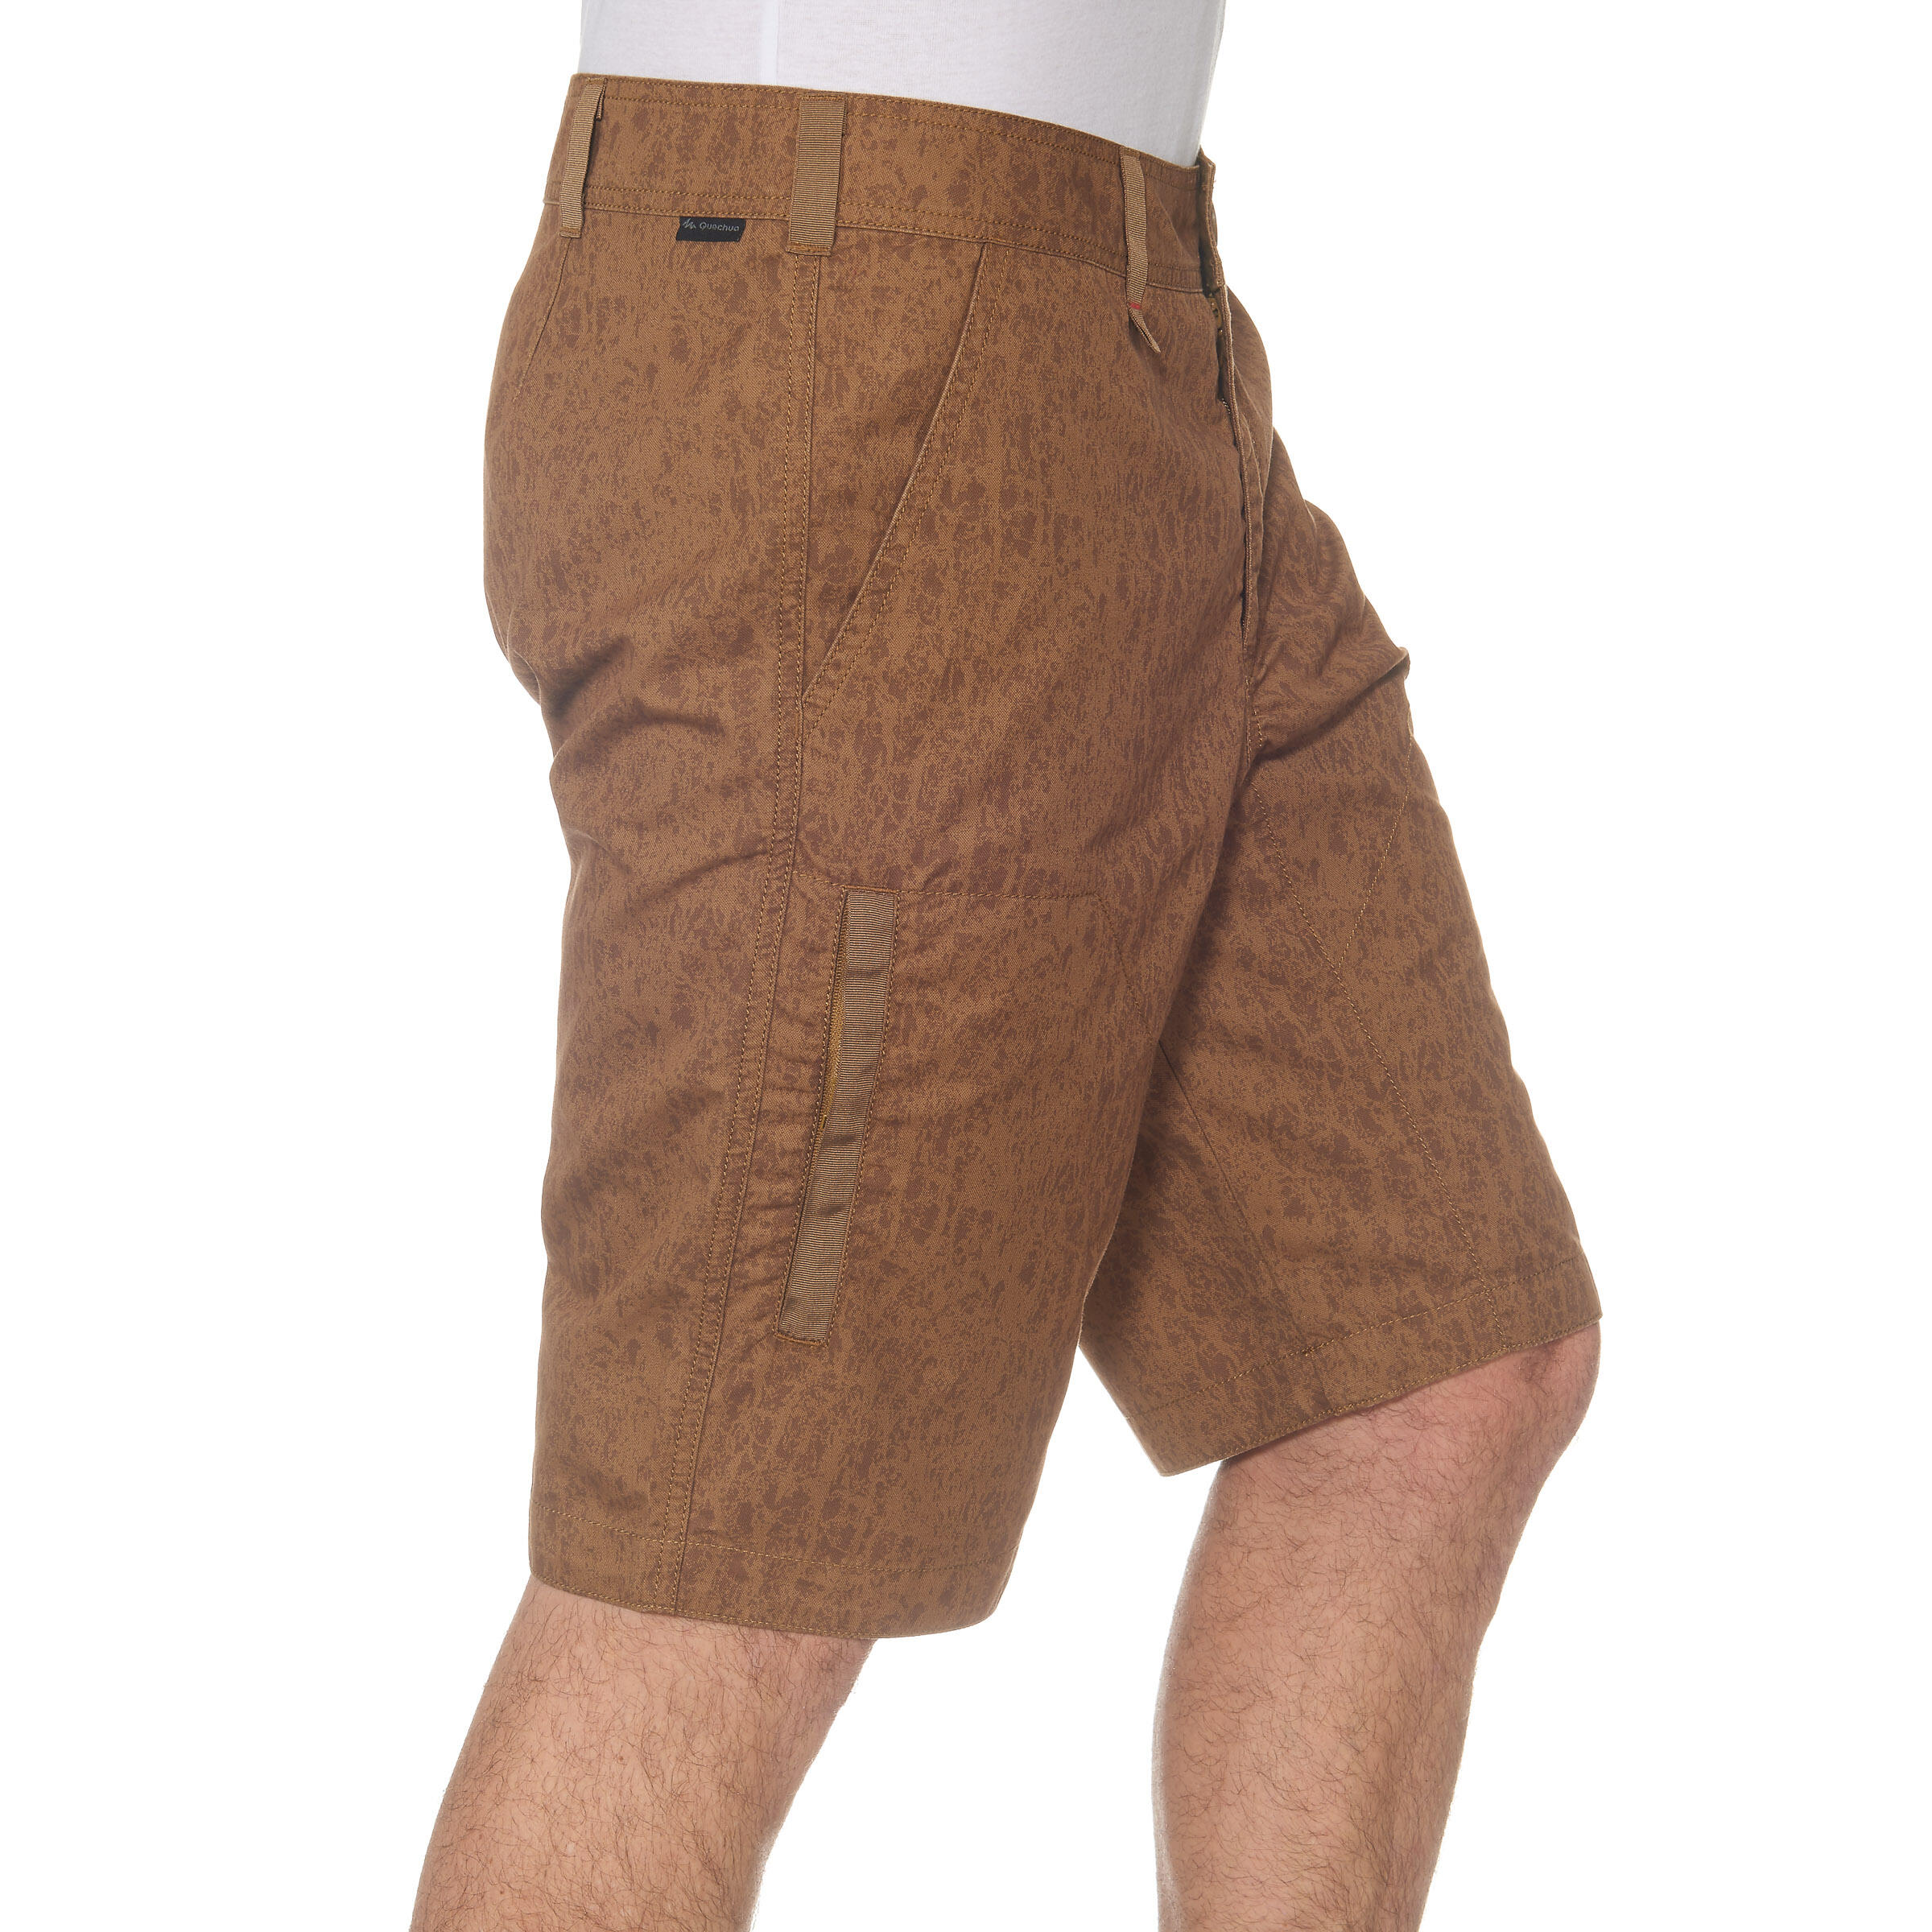 Arpenaz 100 Men's Hiking Shorts - Brown Motif 3/13